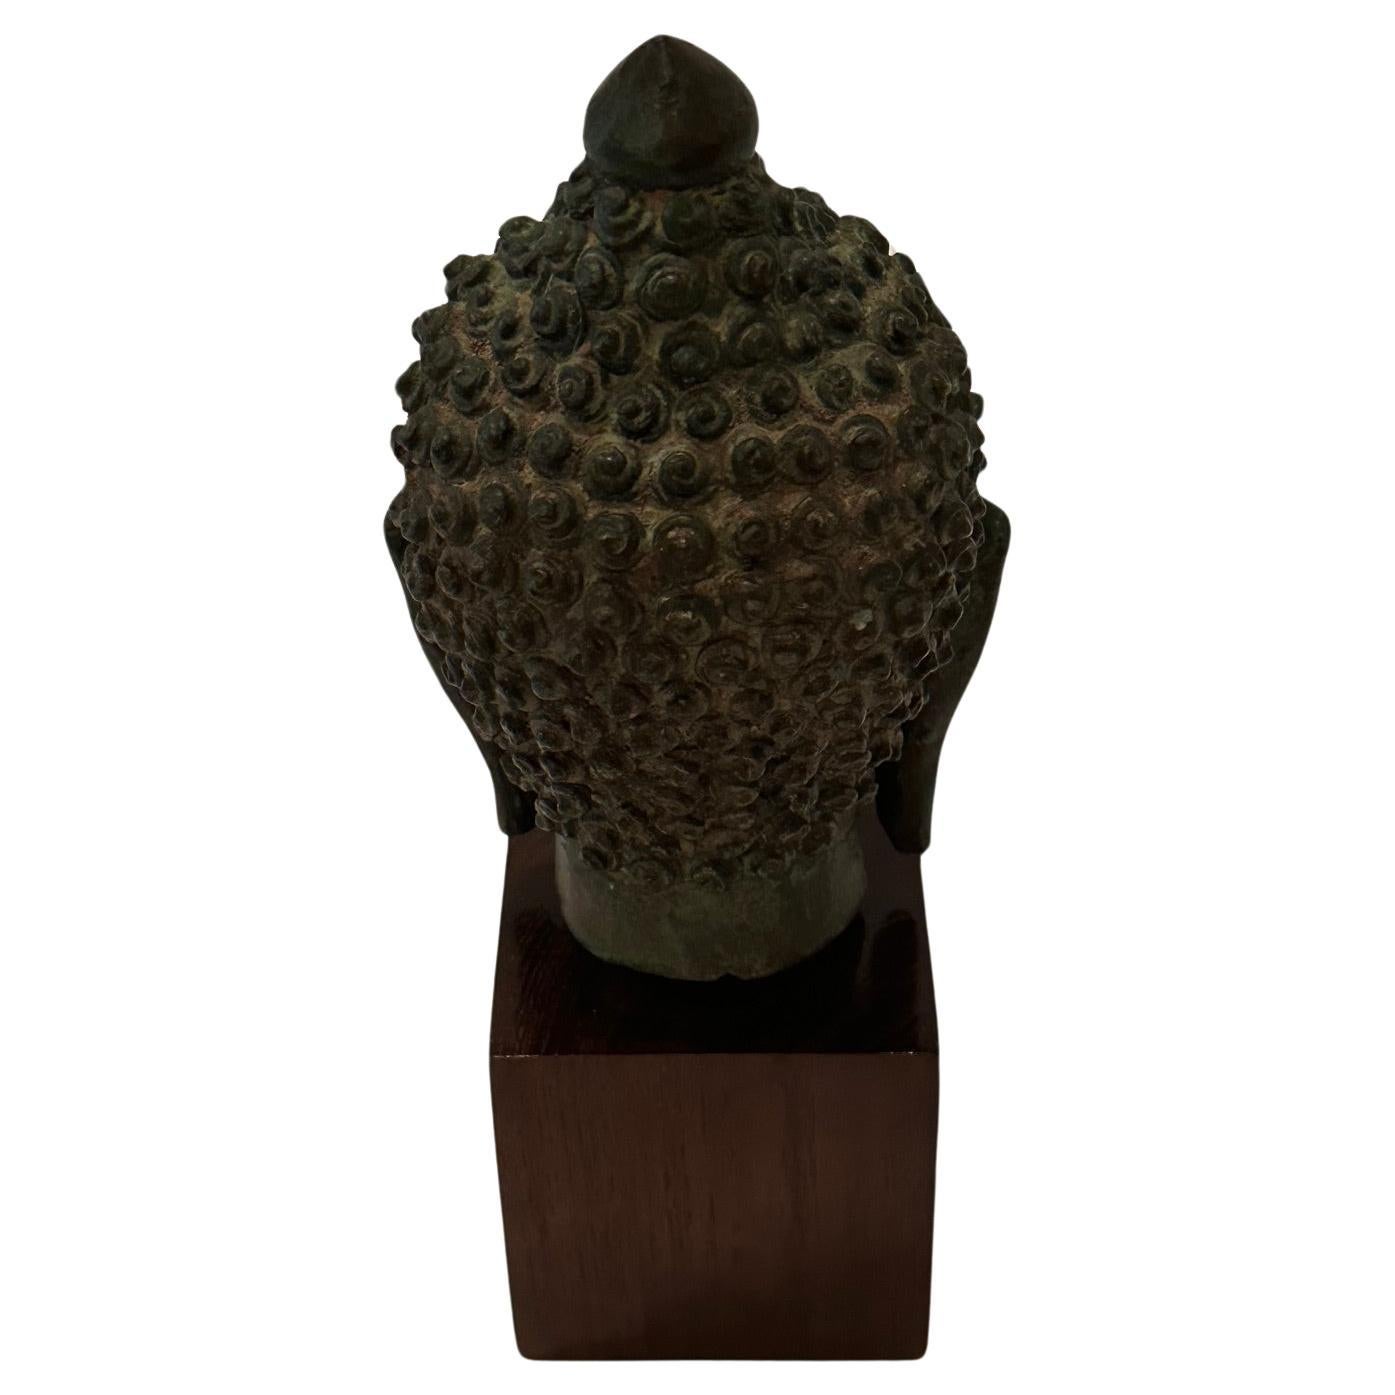 Ravissante petite sculpture thaïlandaise de tête de bouddha en bronze avec une belle patine et montée sur un cube en bois.